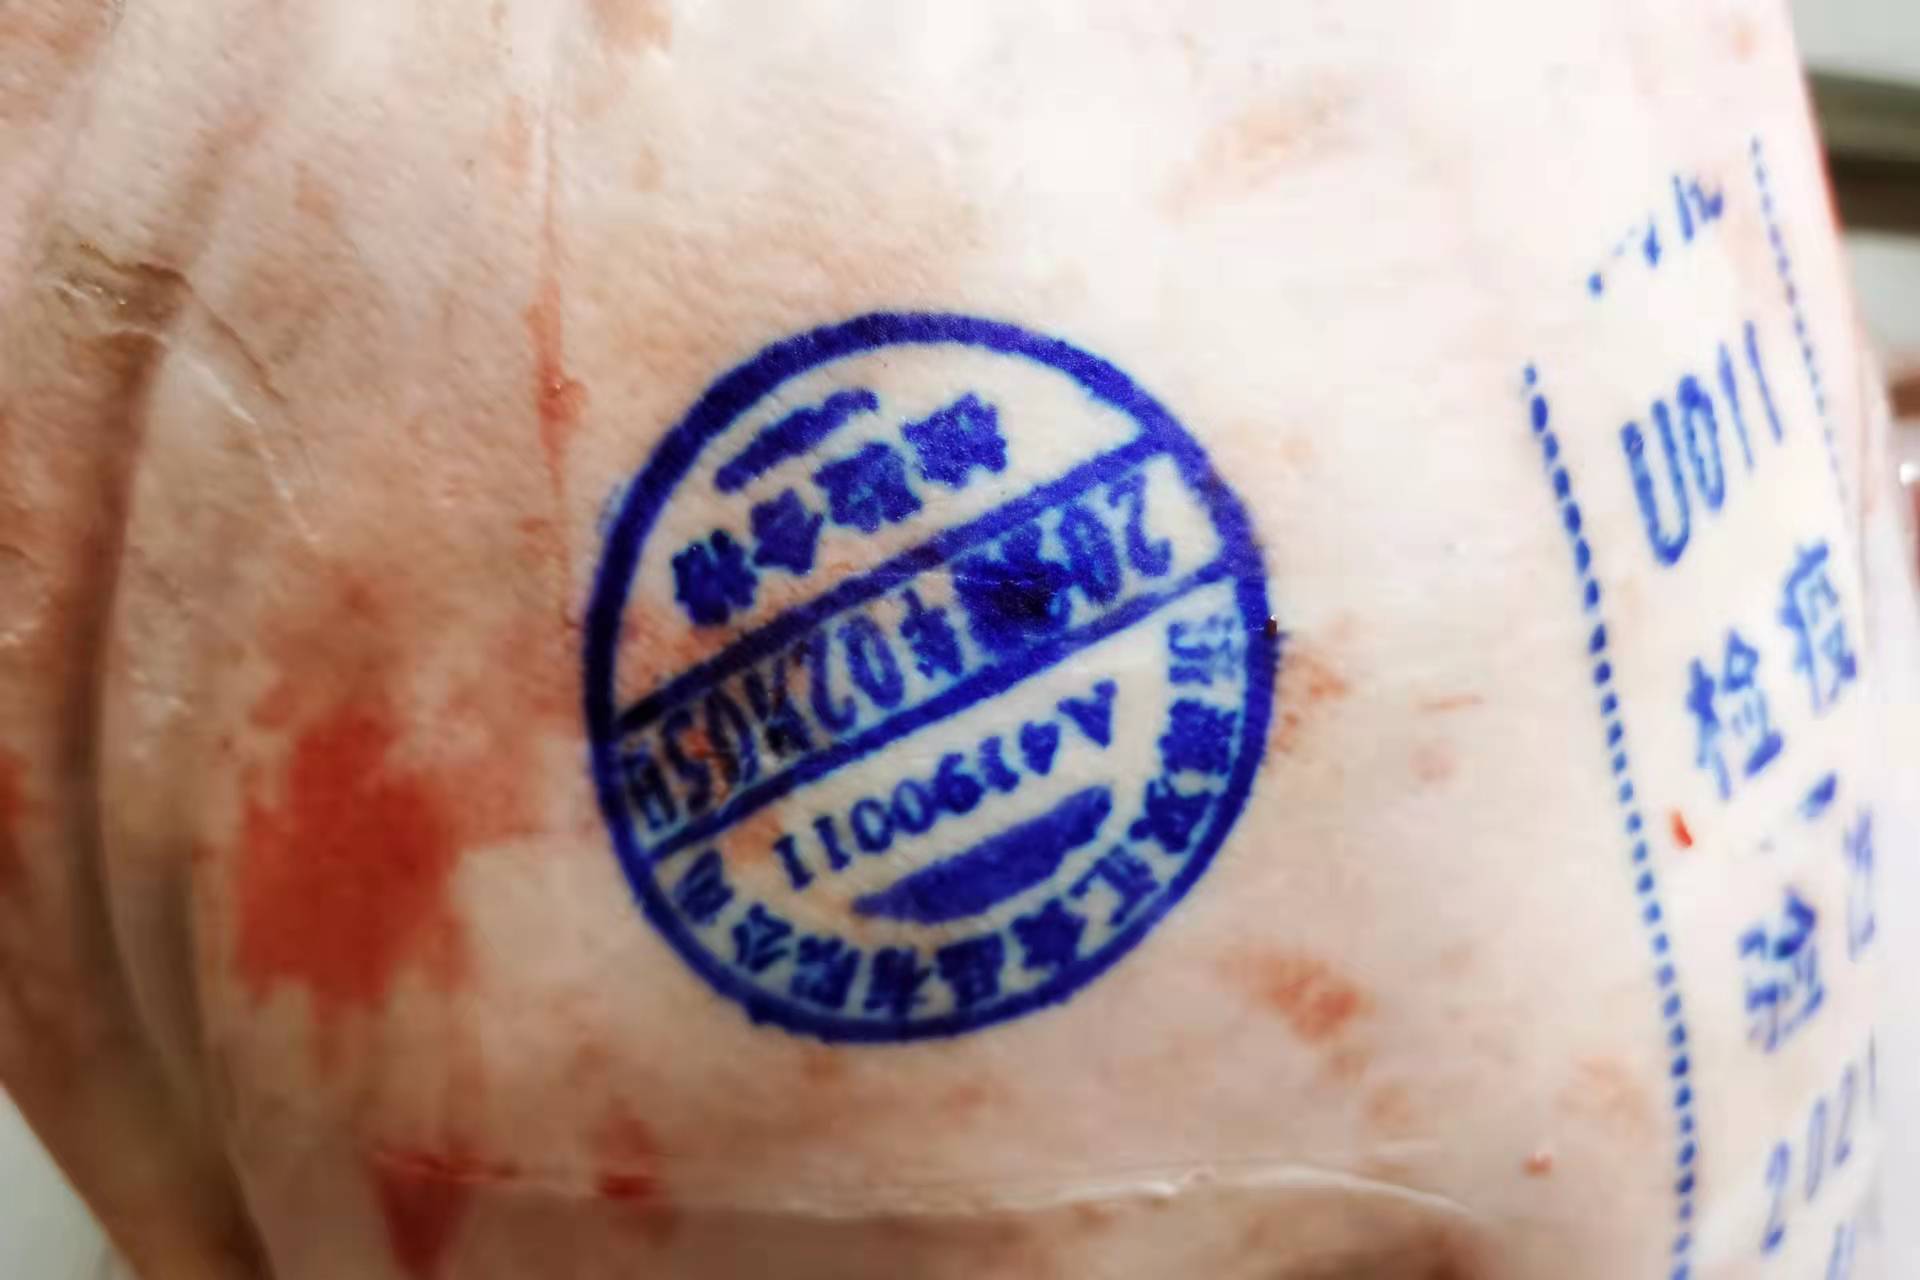 买猪肉时,盖章的猪肉到底能食用吗?这个问题,多数人难做抉择